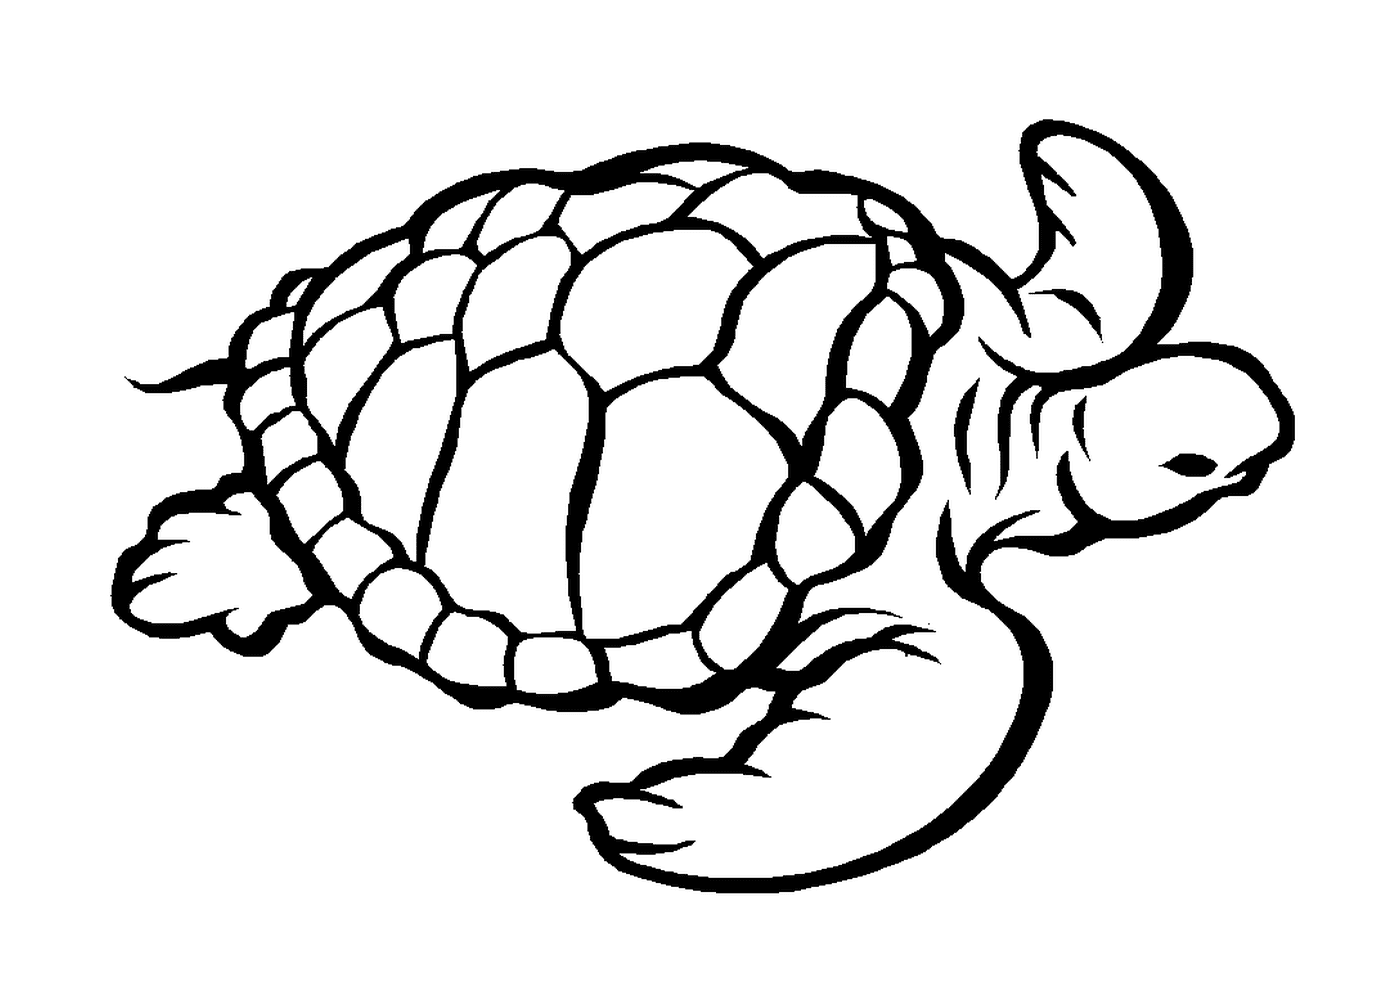  Marine turtle 